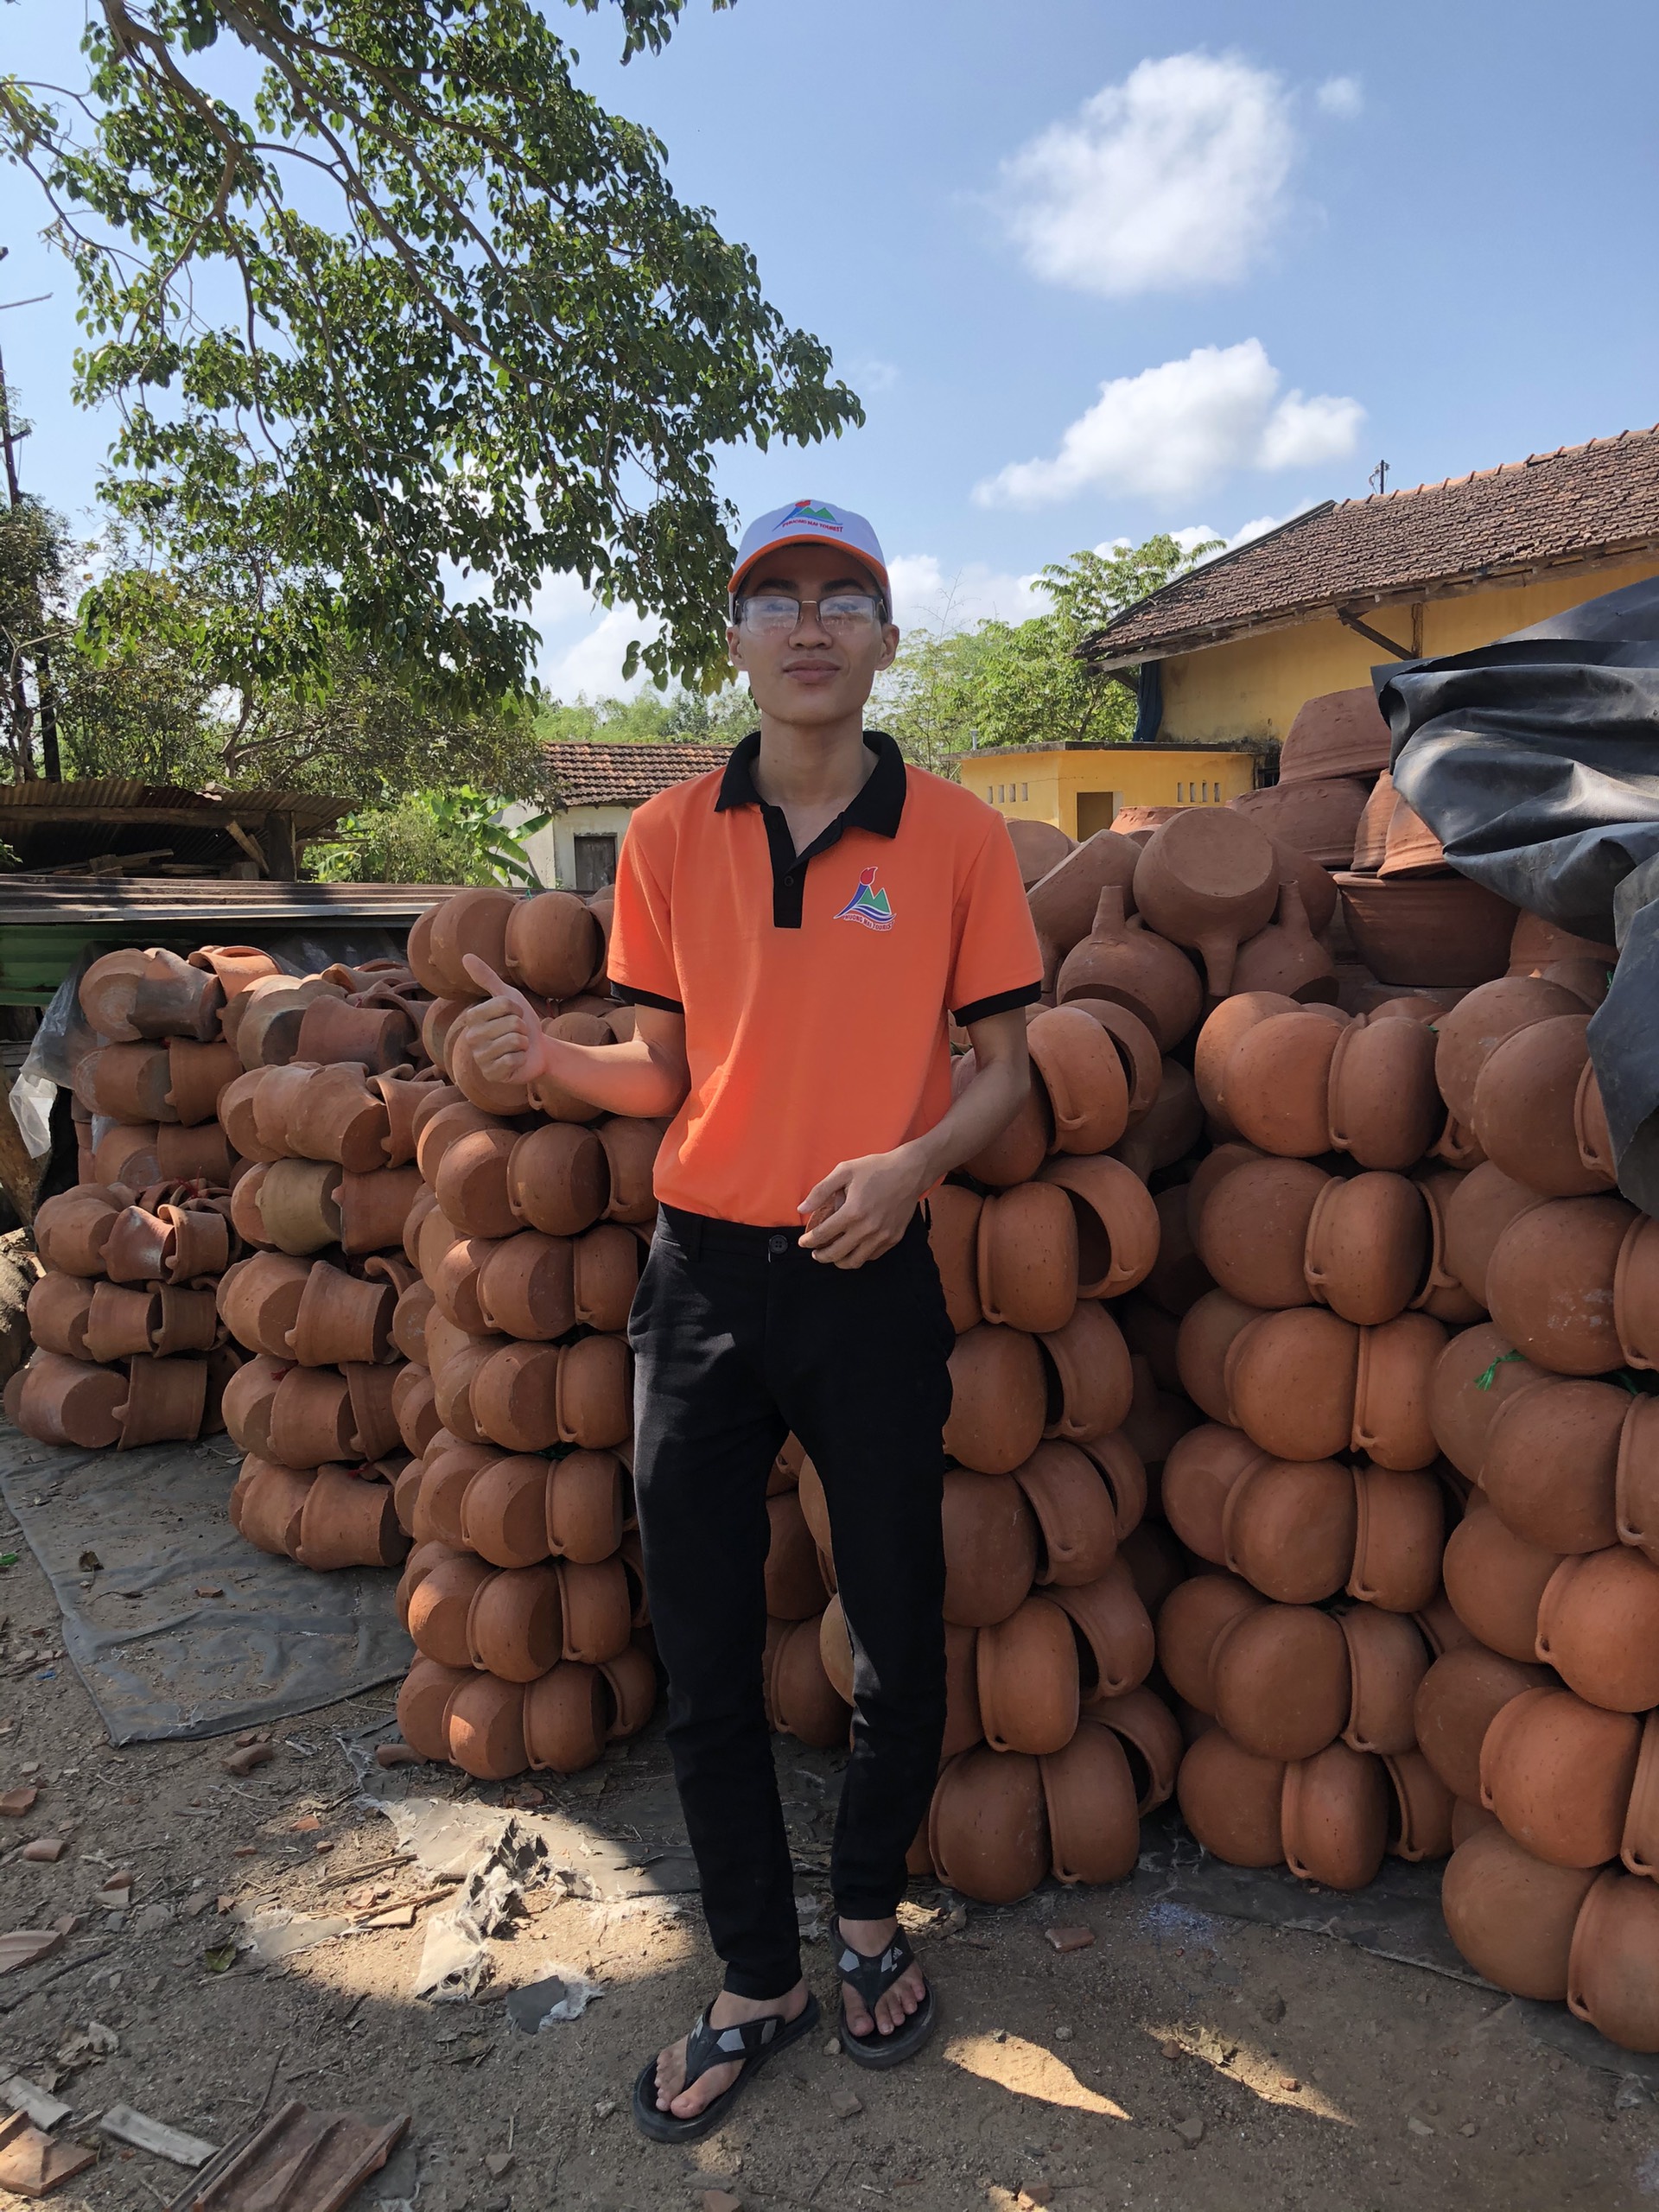 Hành trình khám làng nghề truyền thống Bình Định